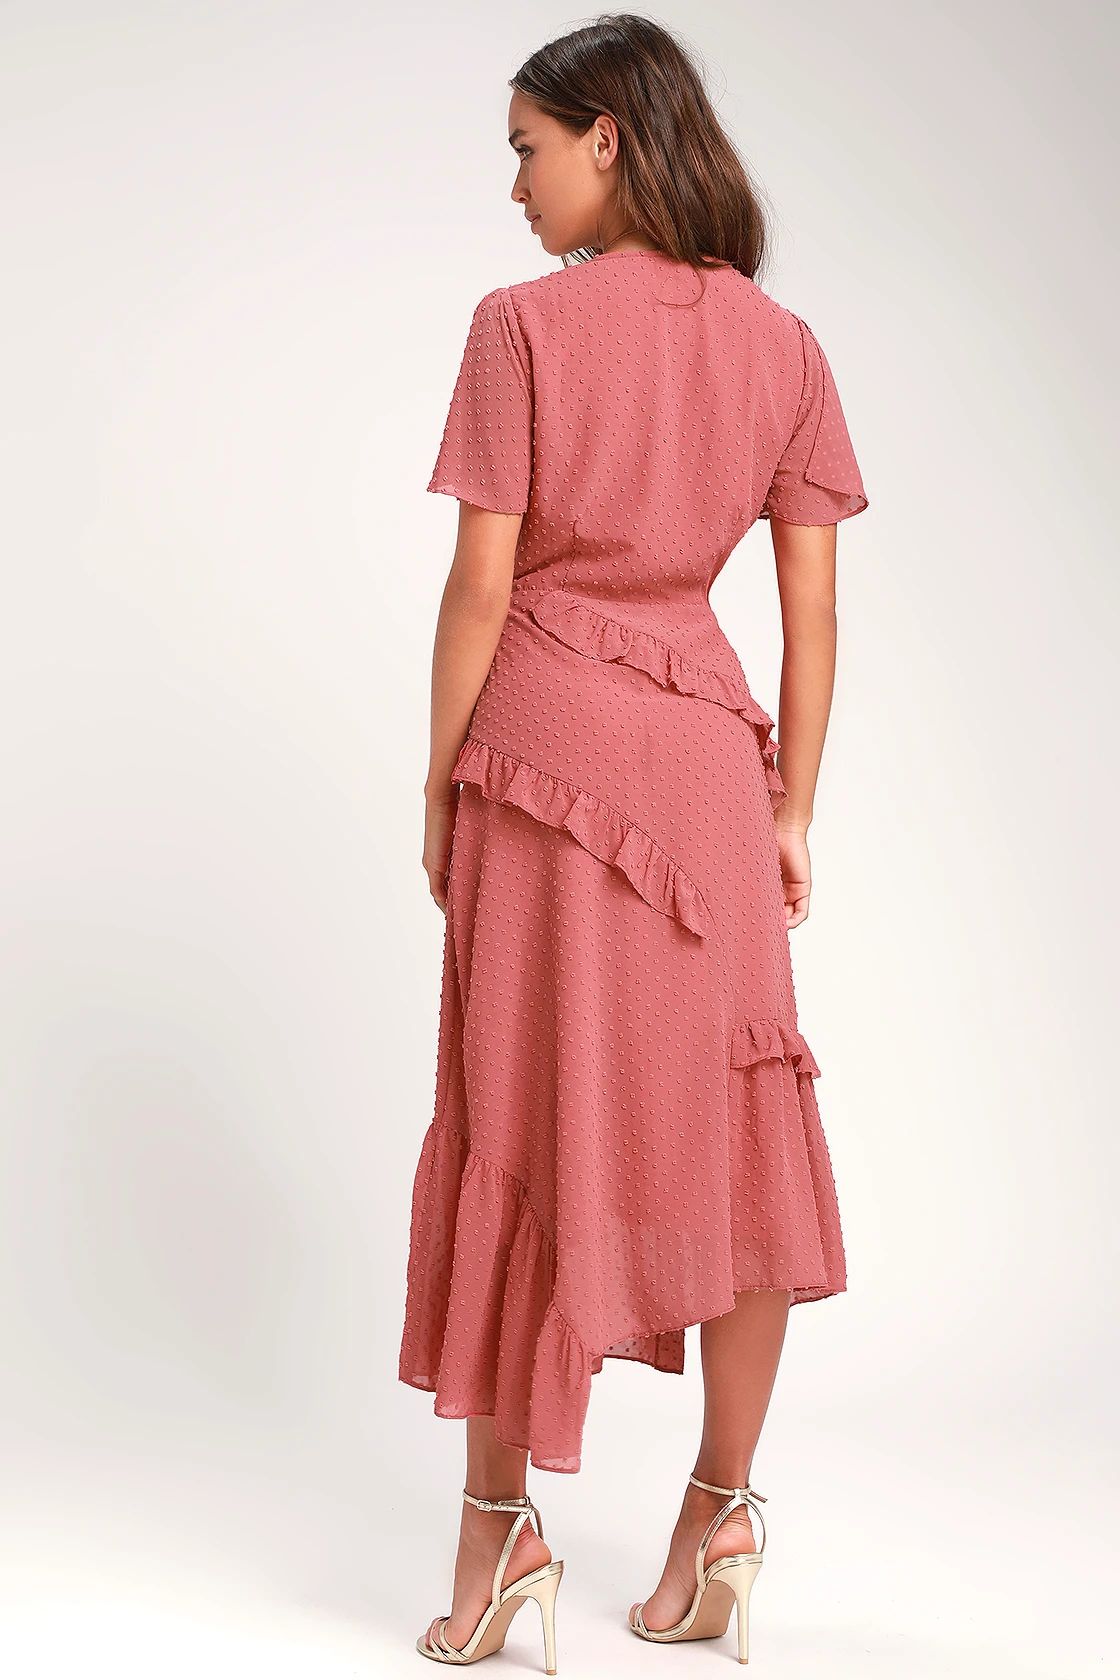 Next to You Rusty Rose Swiss Dot Ruffled Midi Dress | Lulus (US)